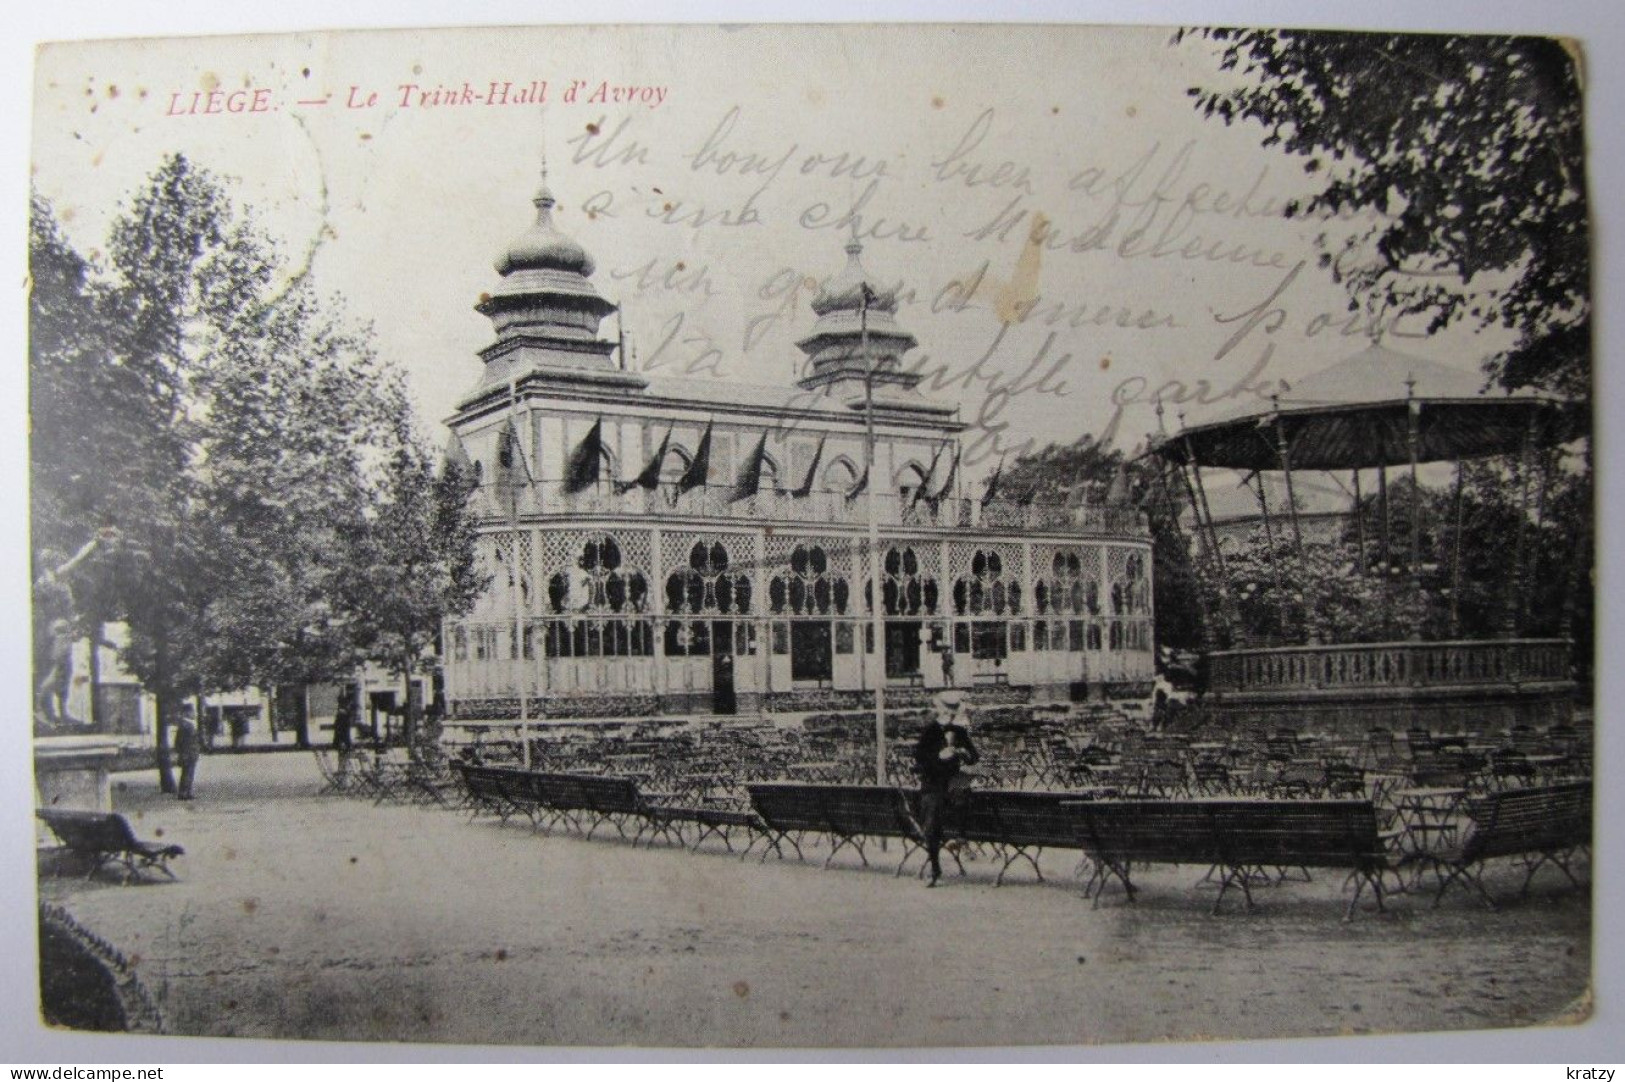 BELGIQUE - LIEGE - VILLE - Le Trink-Hall D'Avroy - 1905 - Liege